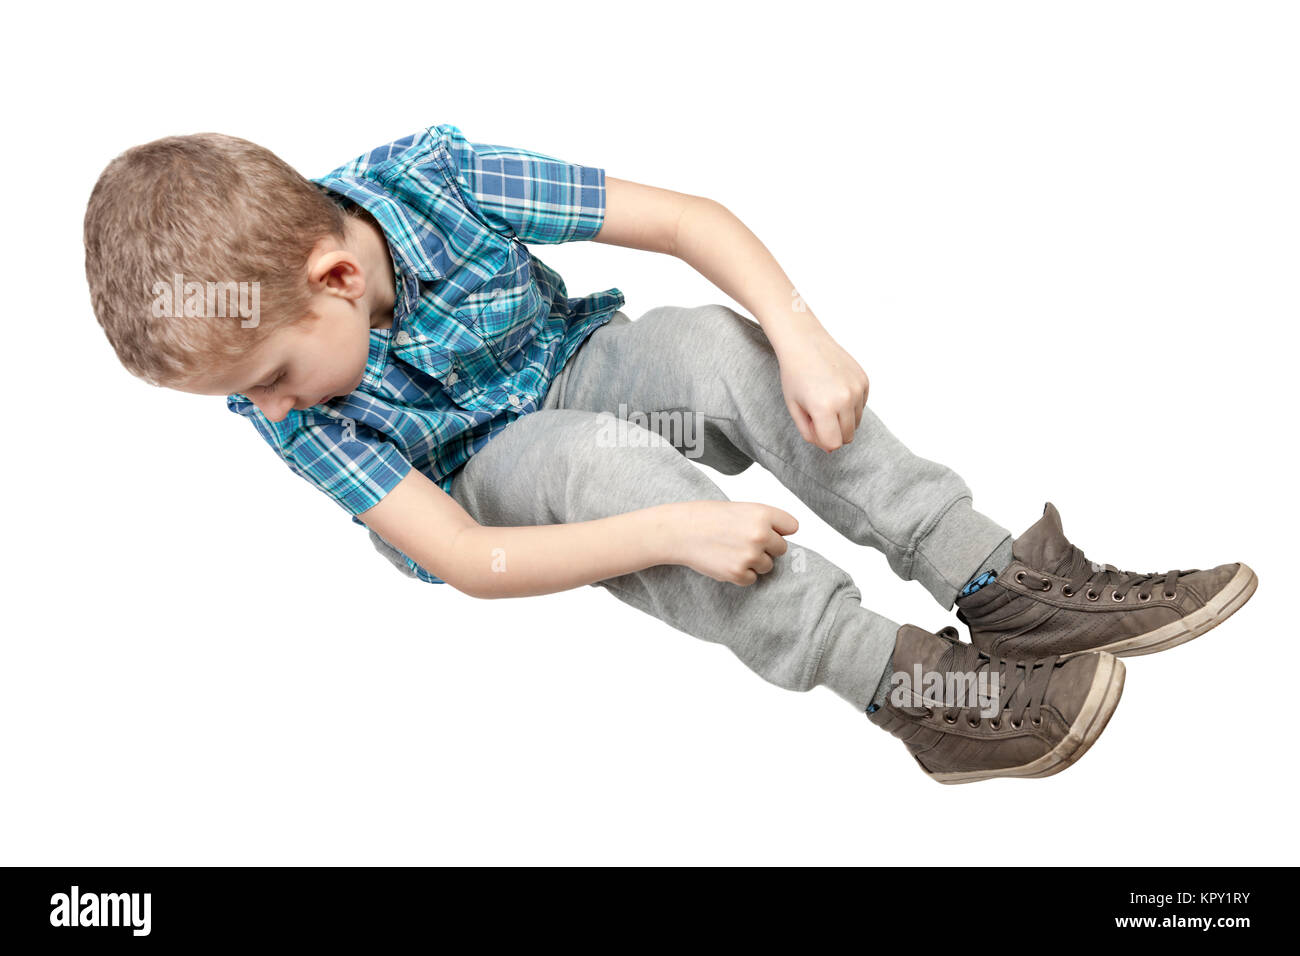 Erhöhte Ansicht auf einen neunjährigen auf Weiss freigestelten Boden Jungen nach unten blickend und ein imaginäres Seil haltend Stock Photo